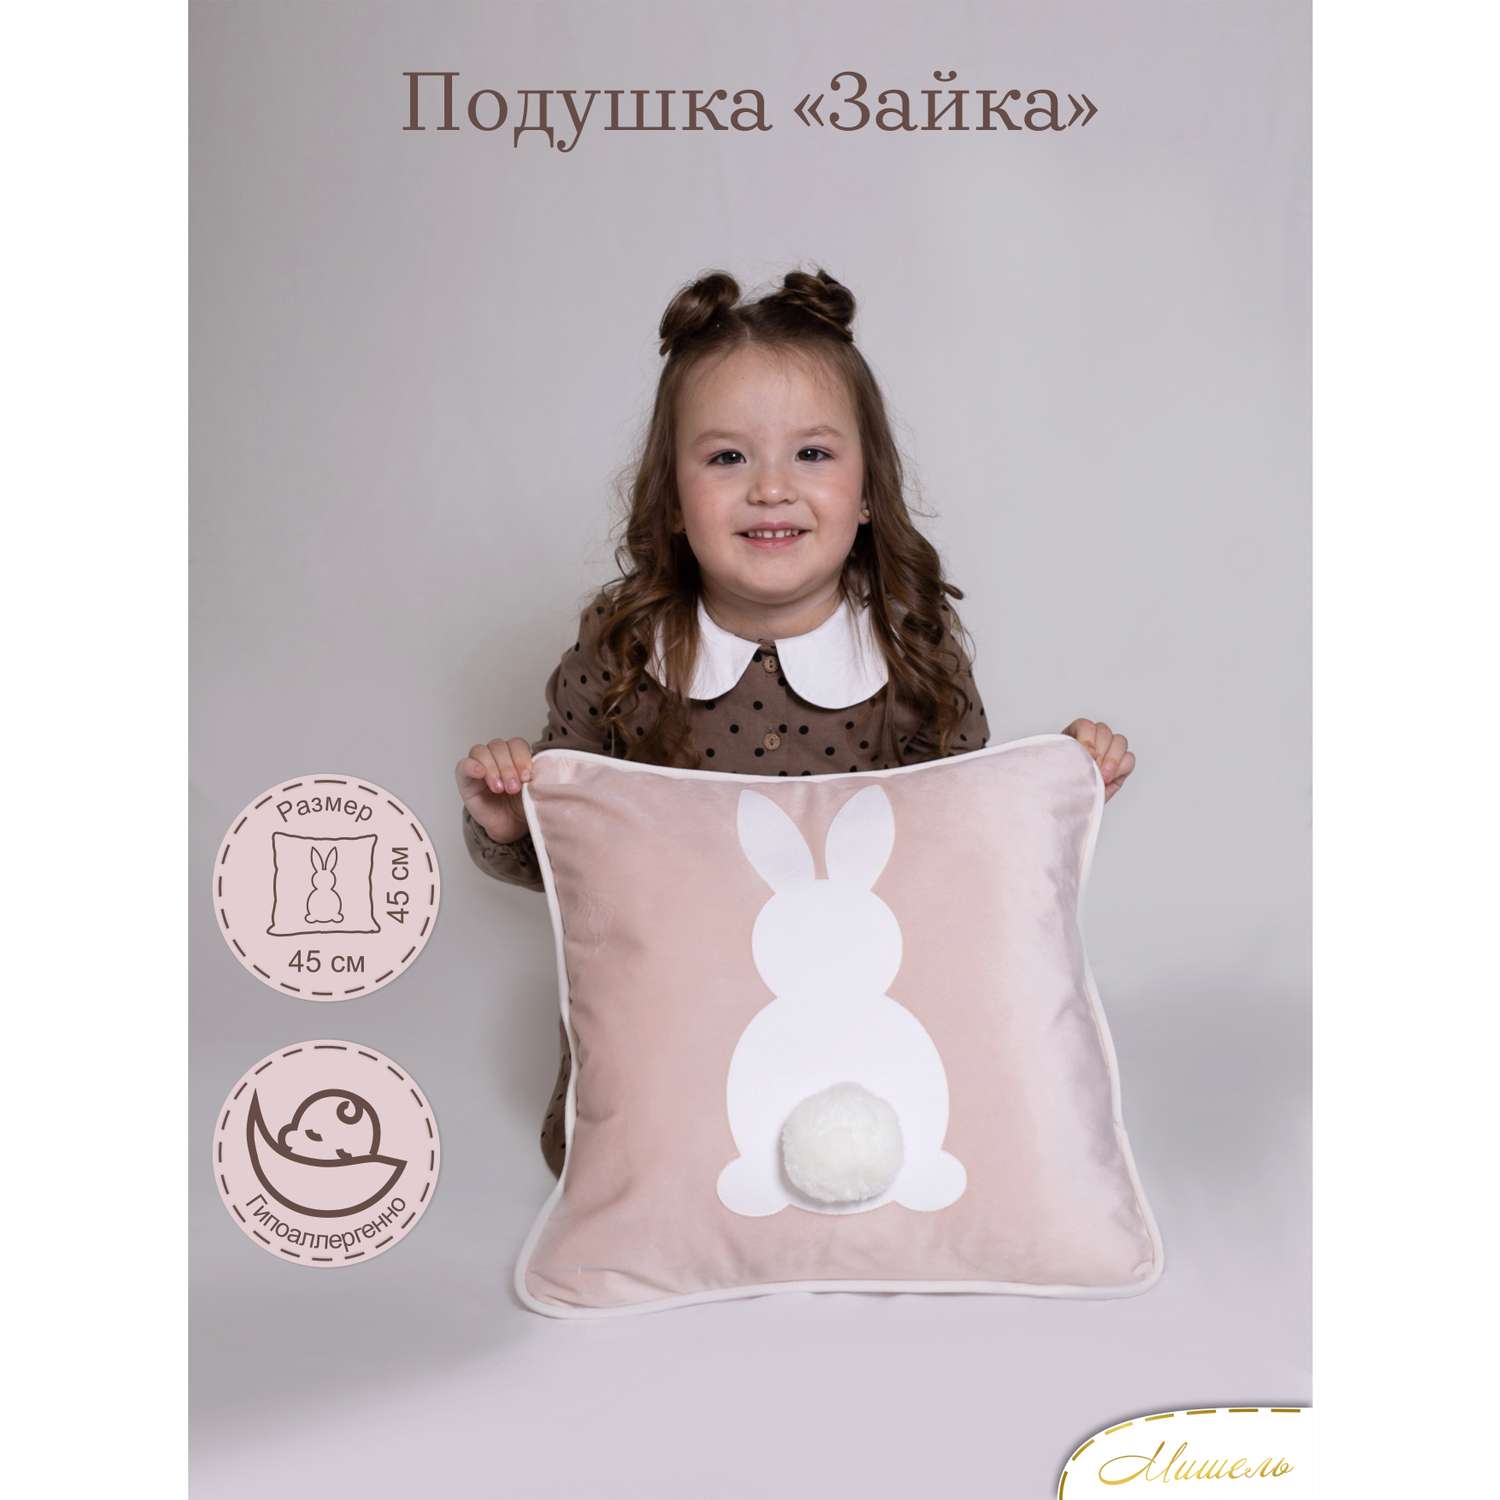 Подушка декоративная детская Мишель Зайка цвет розовая пудра - фото 1